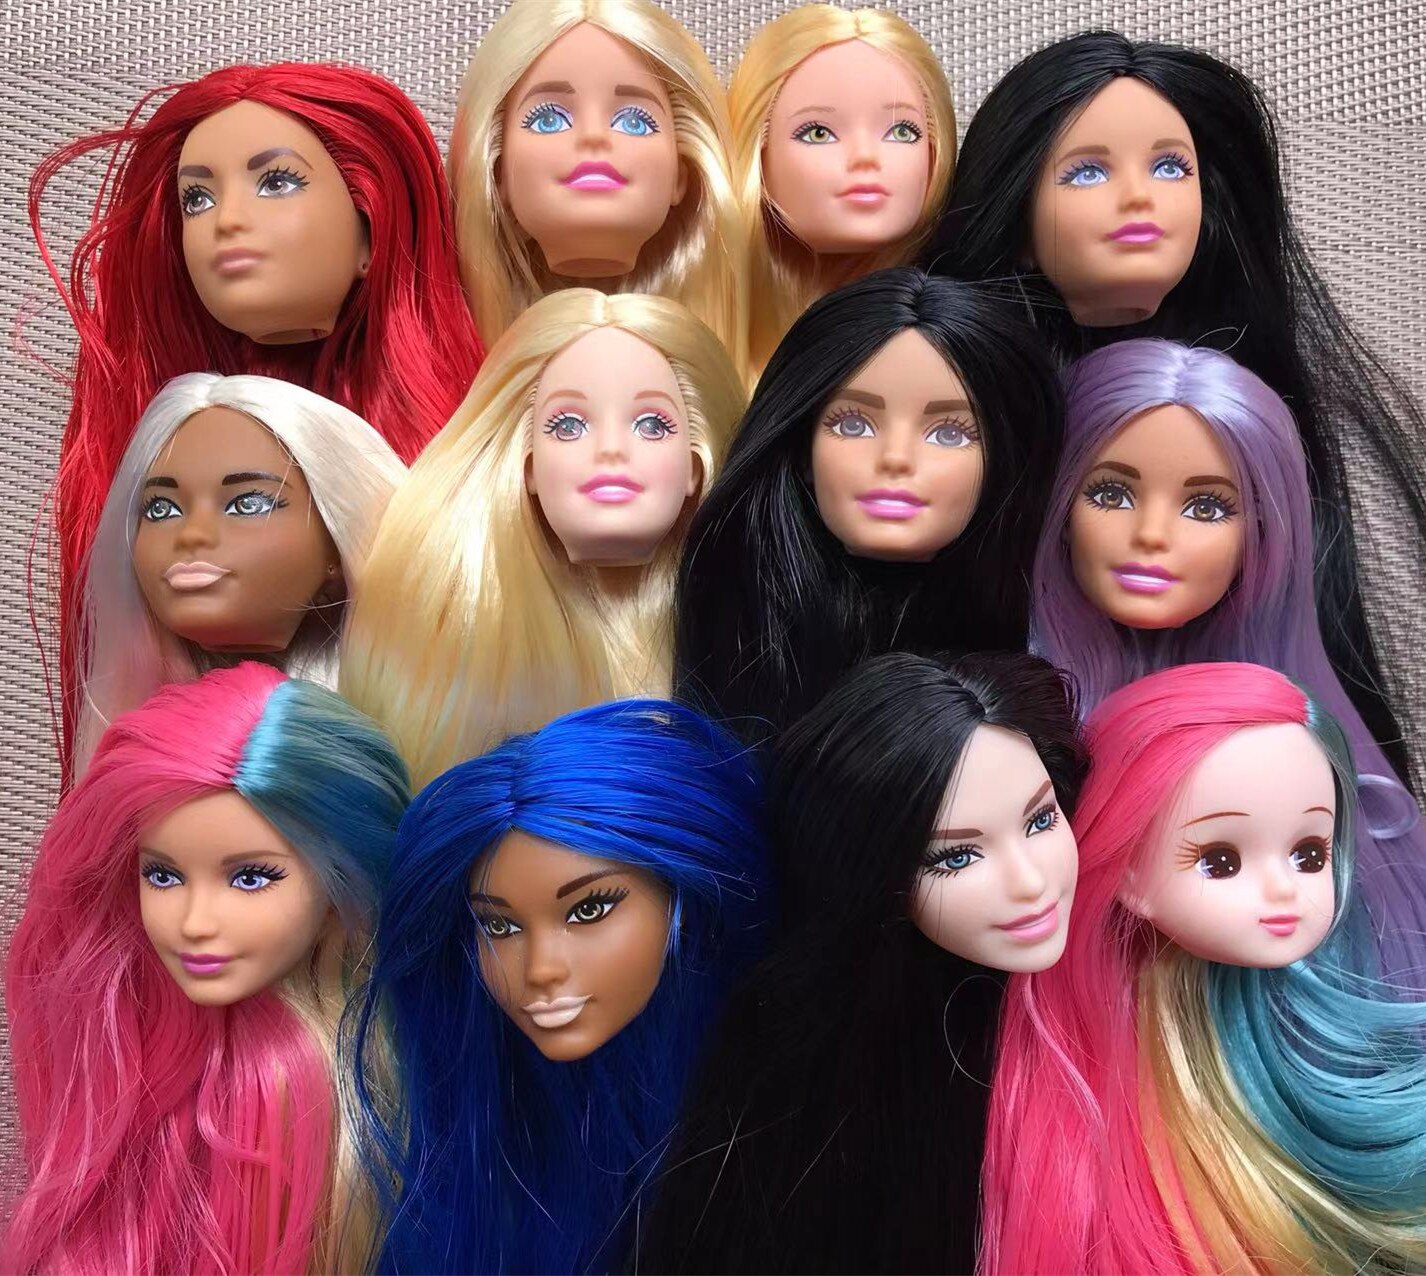 Cabezas de muñeca de pelo largo, cara rara, piezas de colección limitada, piel blanca, café, Beige y marrón, cabezas de muñeca femenina, figuras de juguete